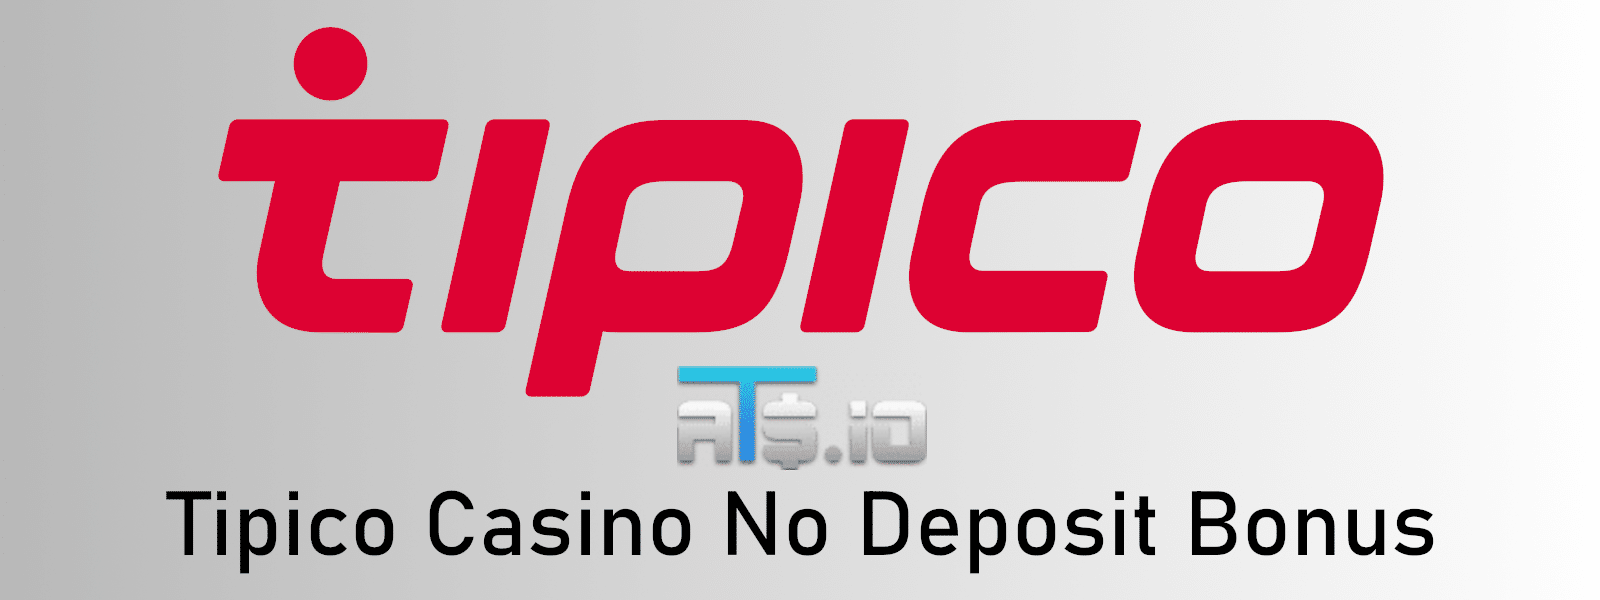 Tipico NJ Online Casino Review and Bonus Code